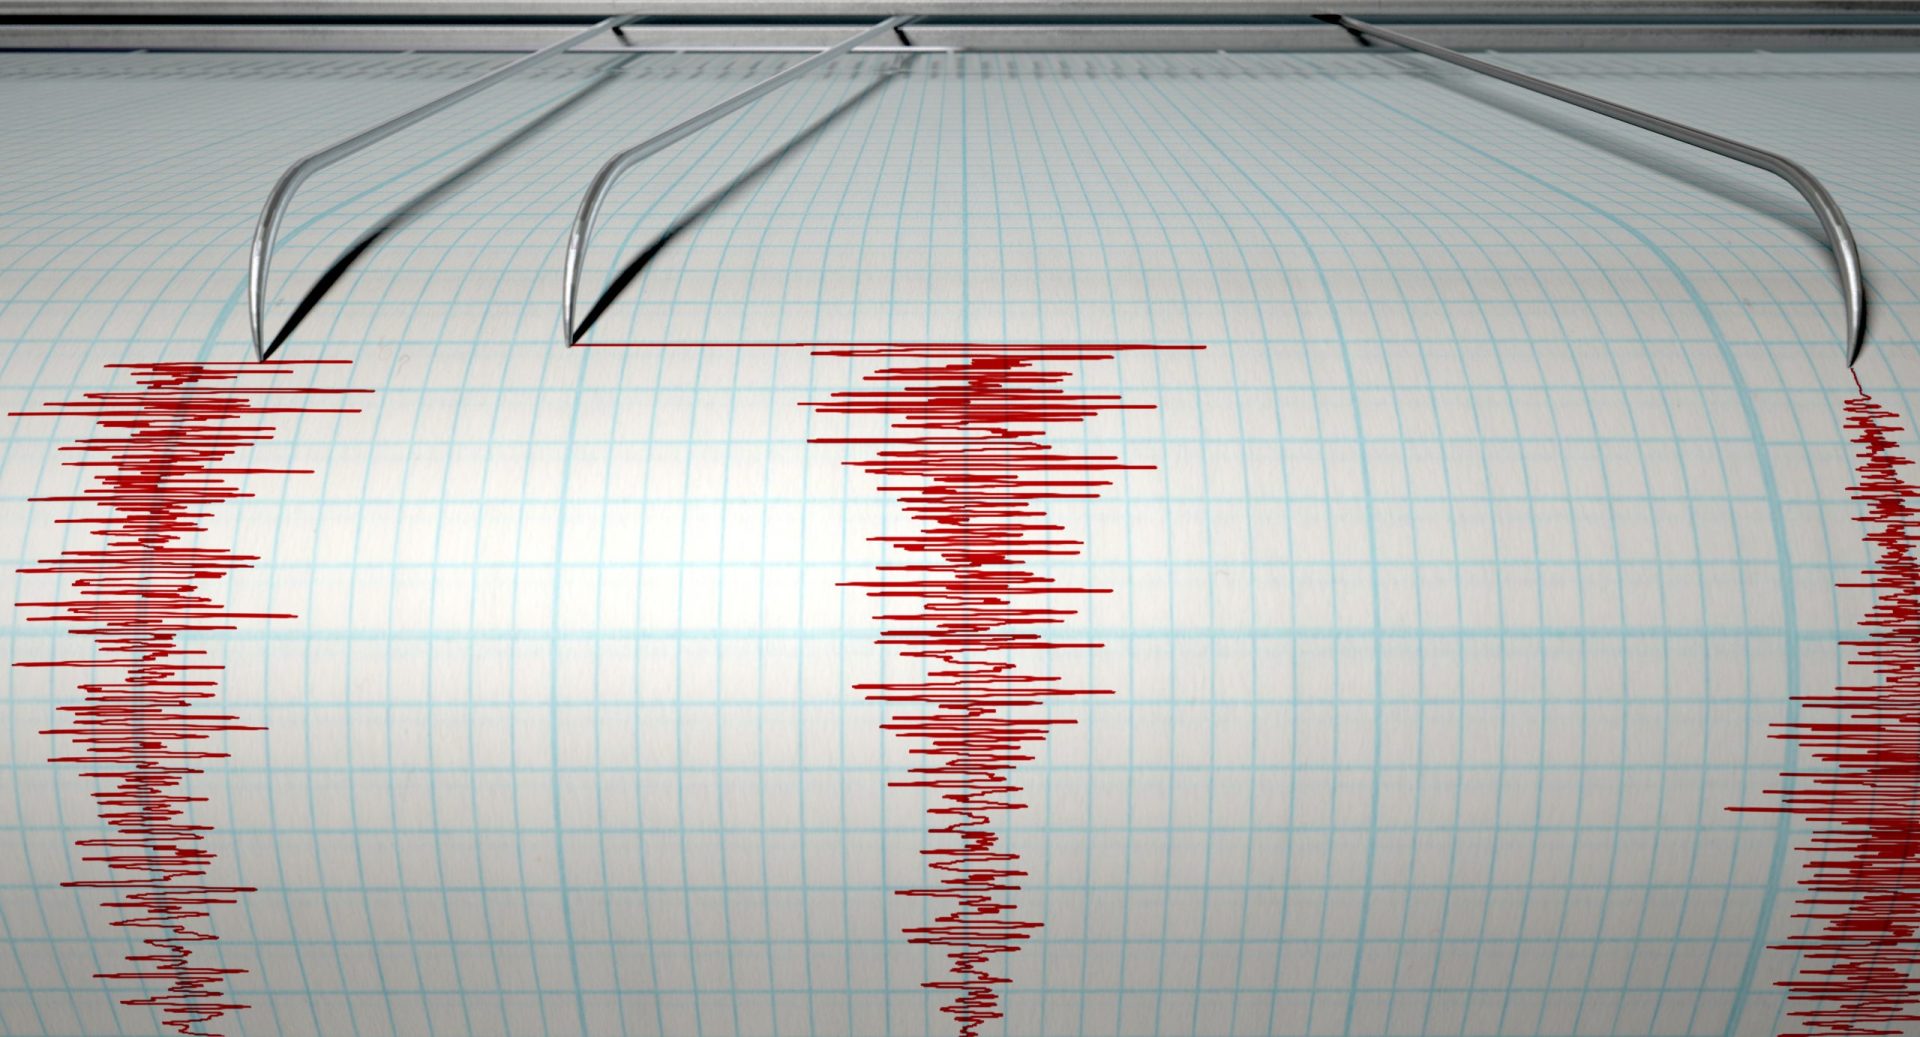 Terramoto na Ásia faz 10 mortos